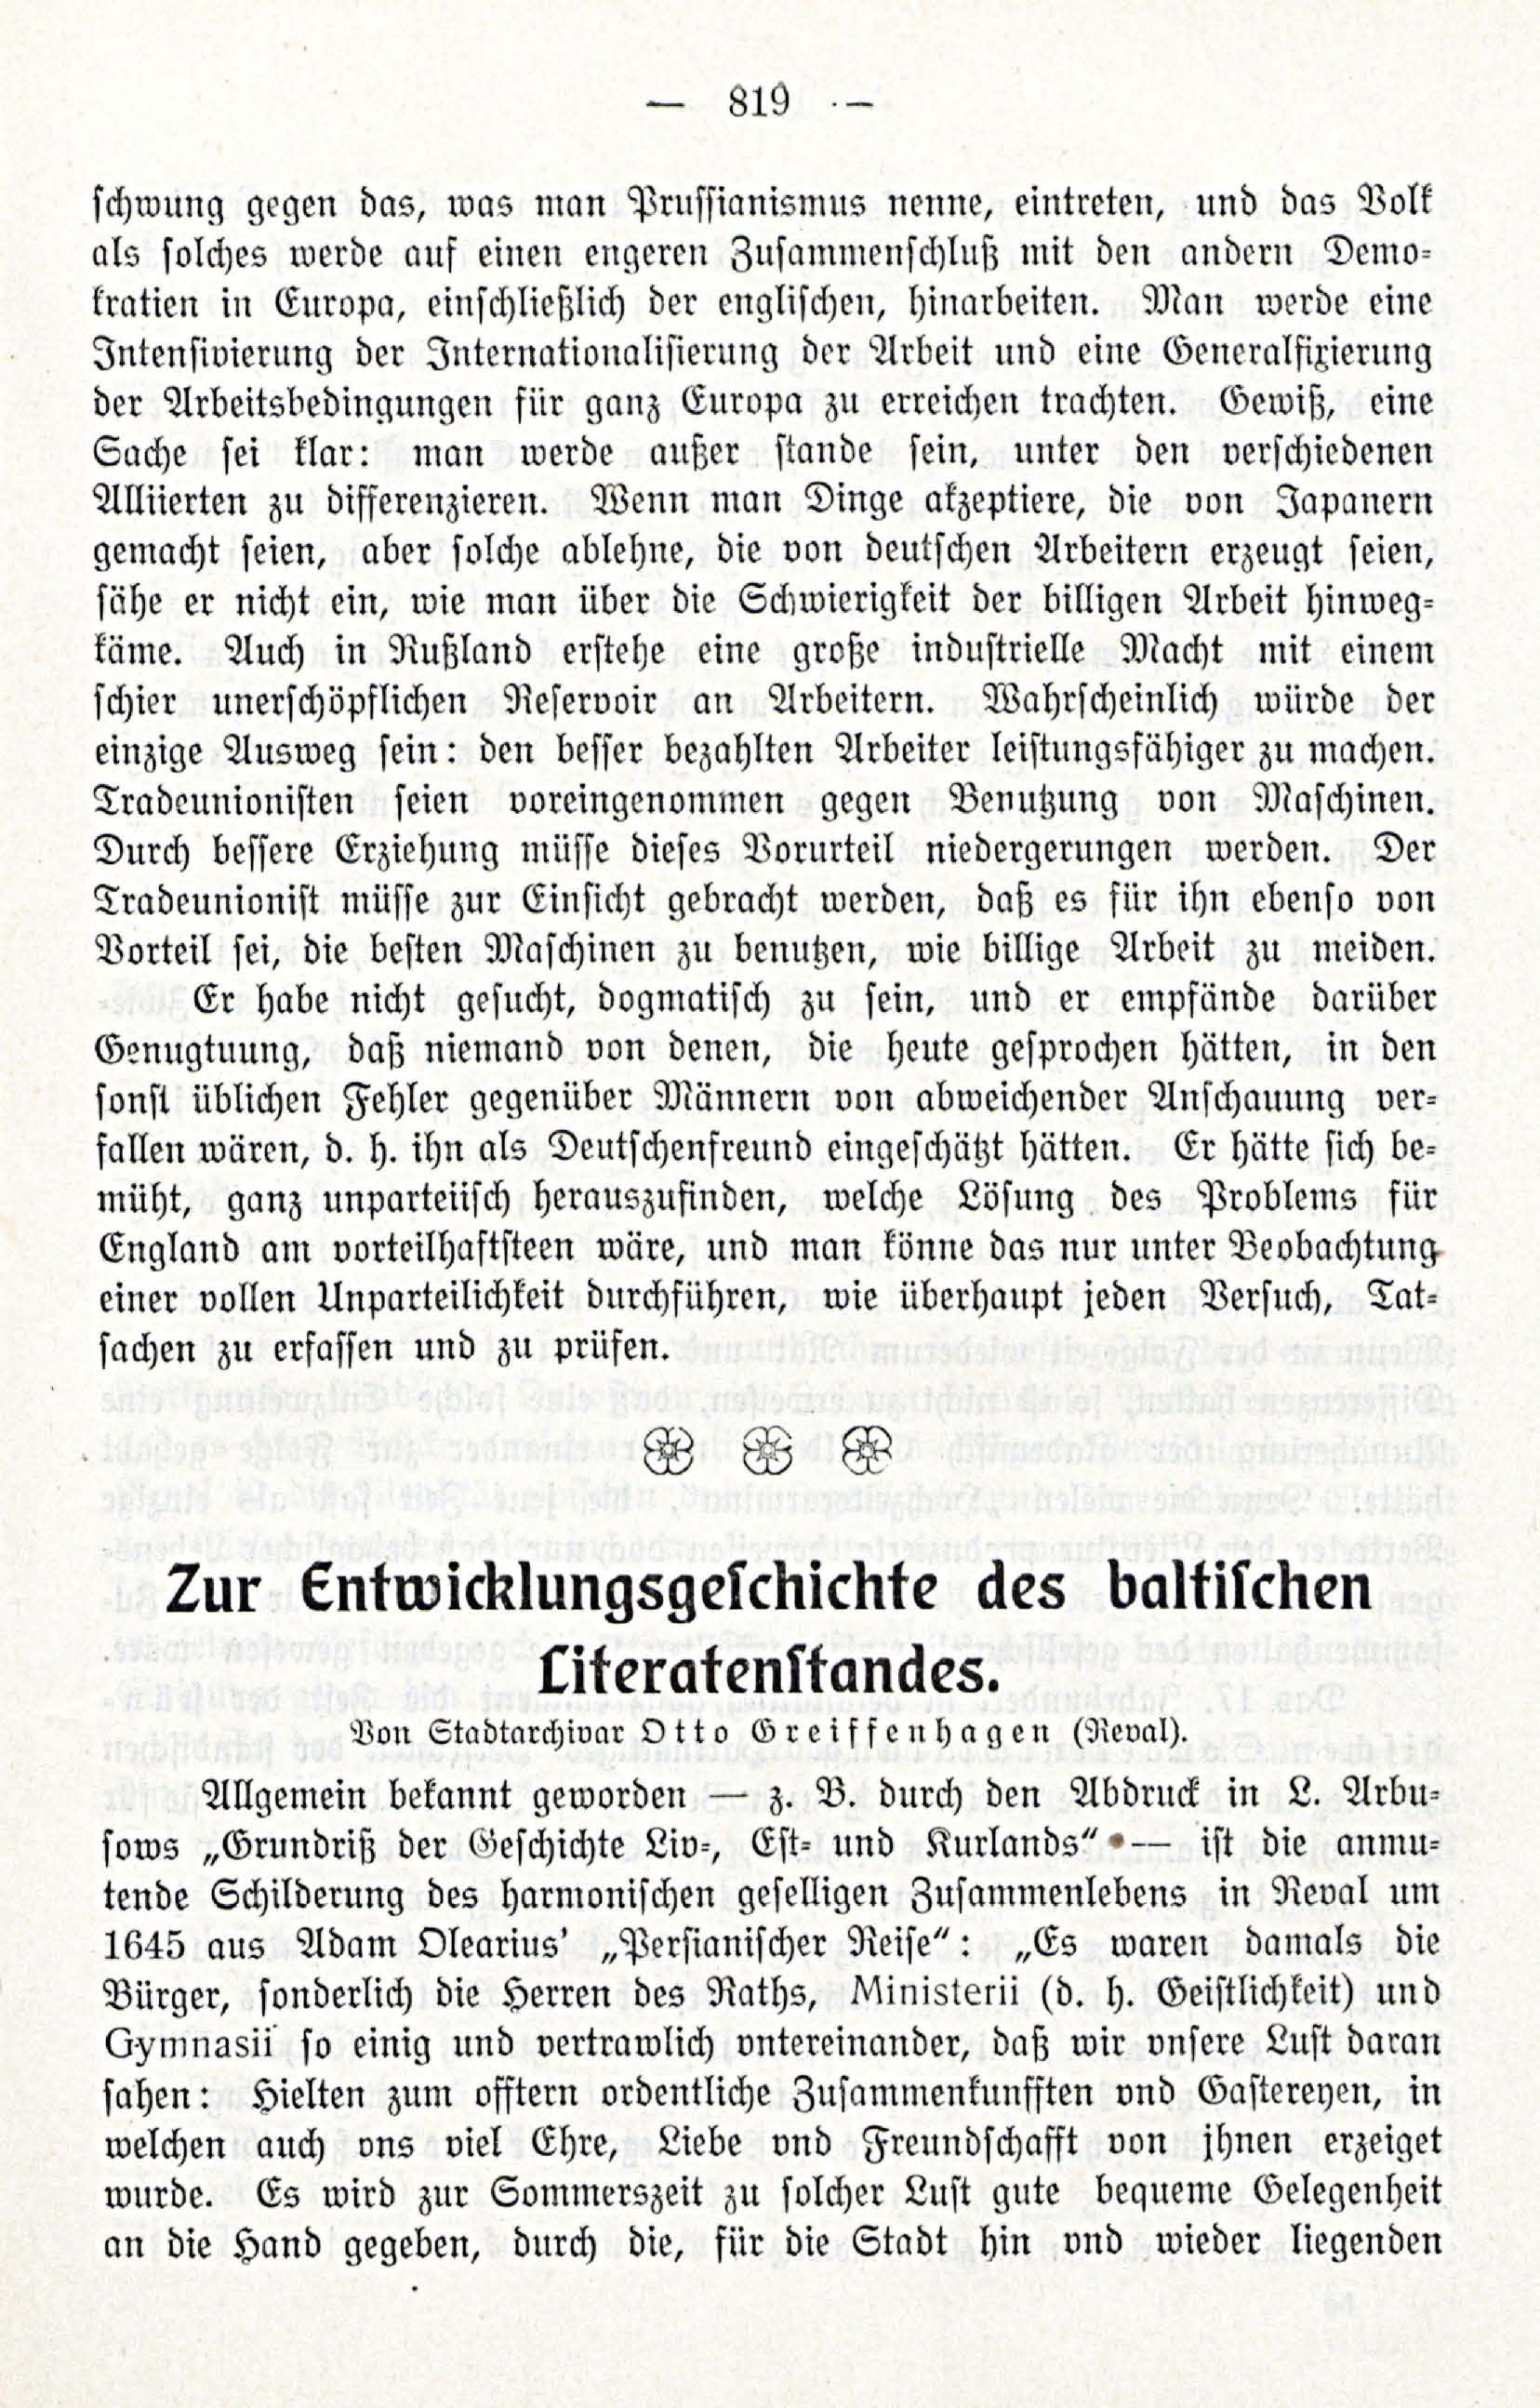 Zur Entwicklungesgescshichte des baltischen Literatenstandes (1914) | 1. (819) Põhitekst